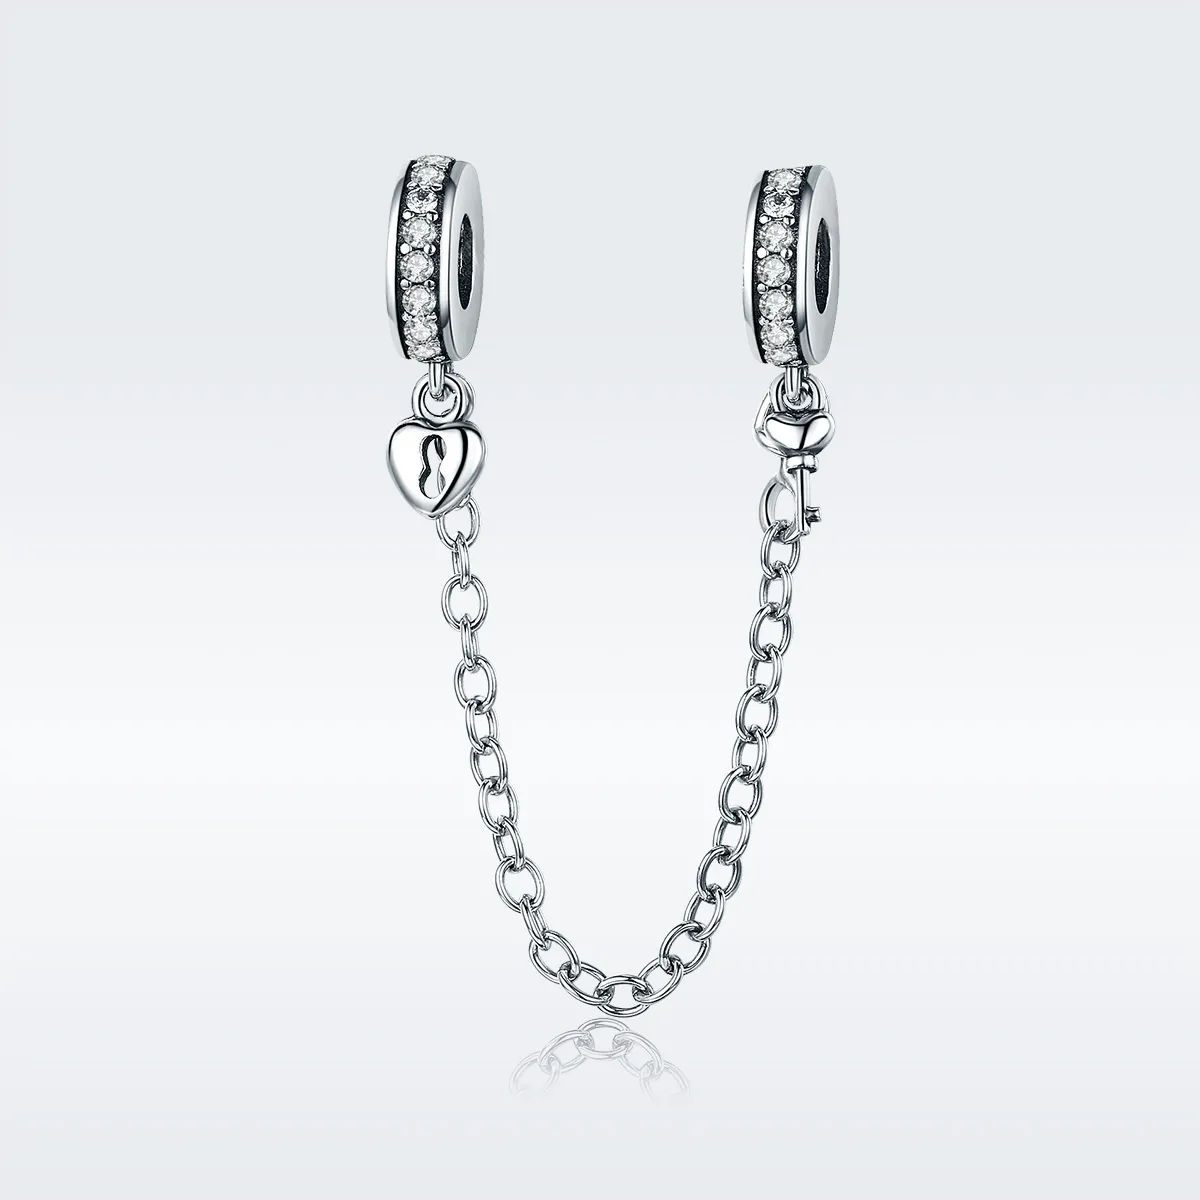 Lanț de siguranță Tip Pandora cu Numai Iubirea din argint - SCC606